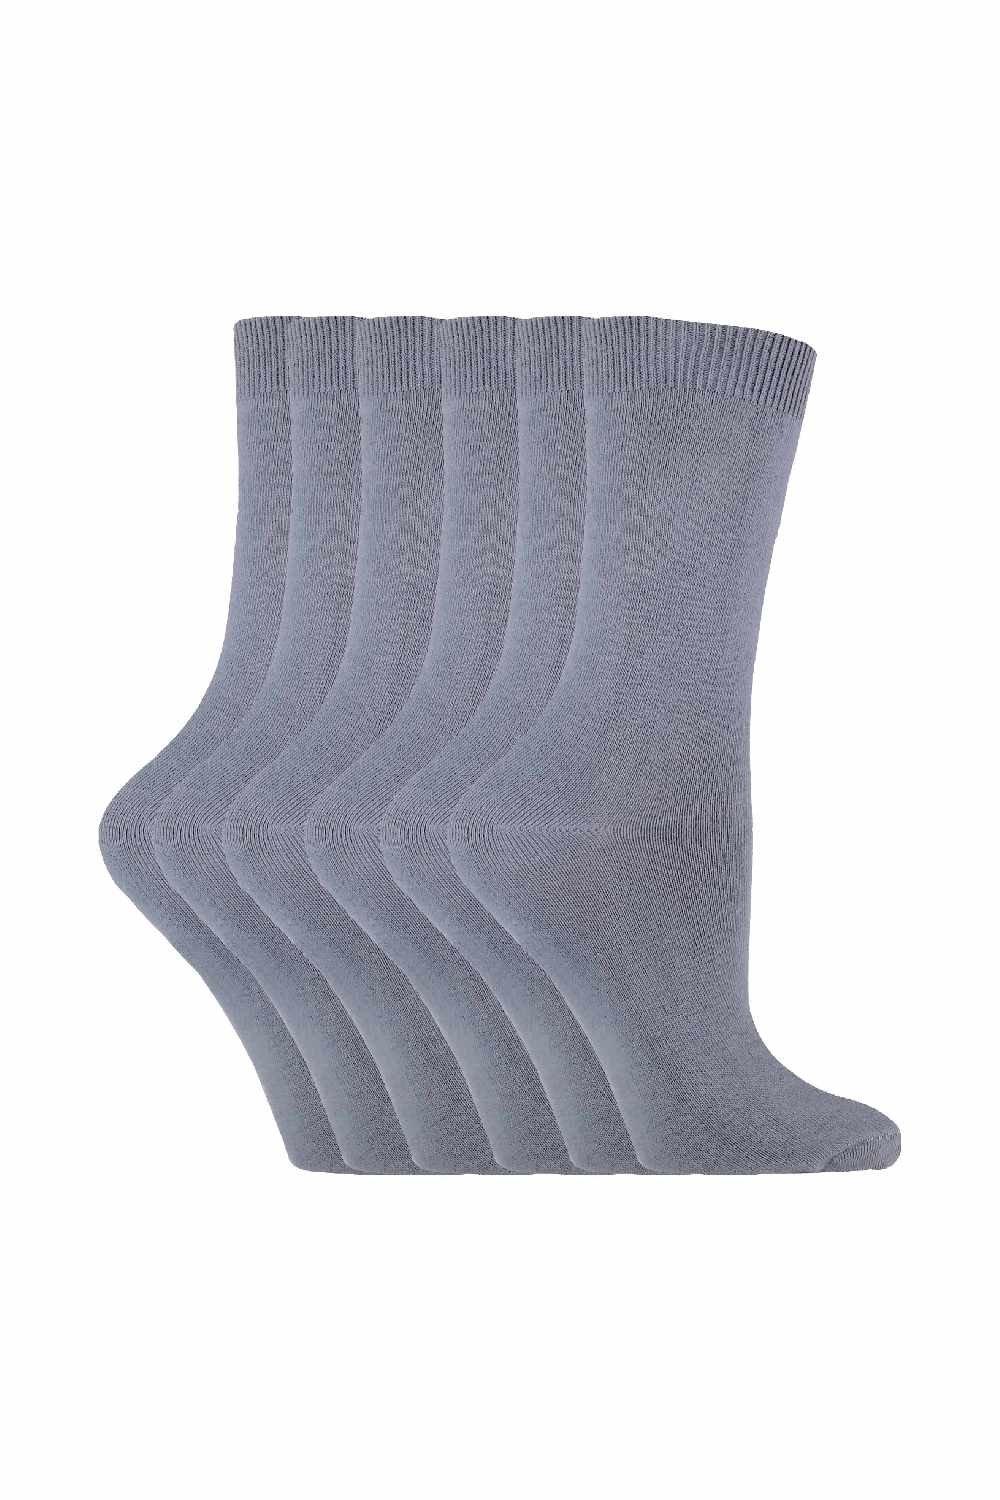 6 Pairs Plain Coloured Cotton Rich Ankle Socks